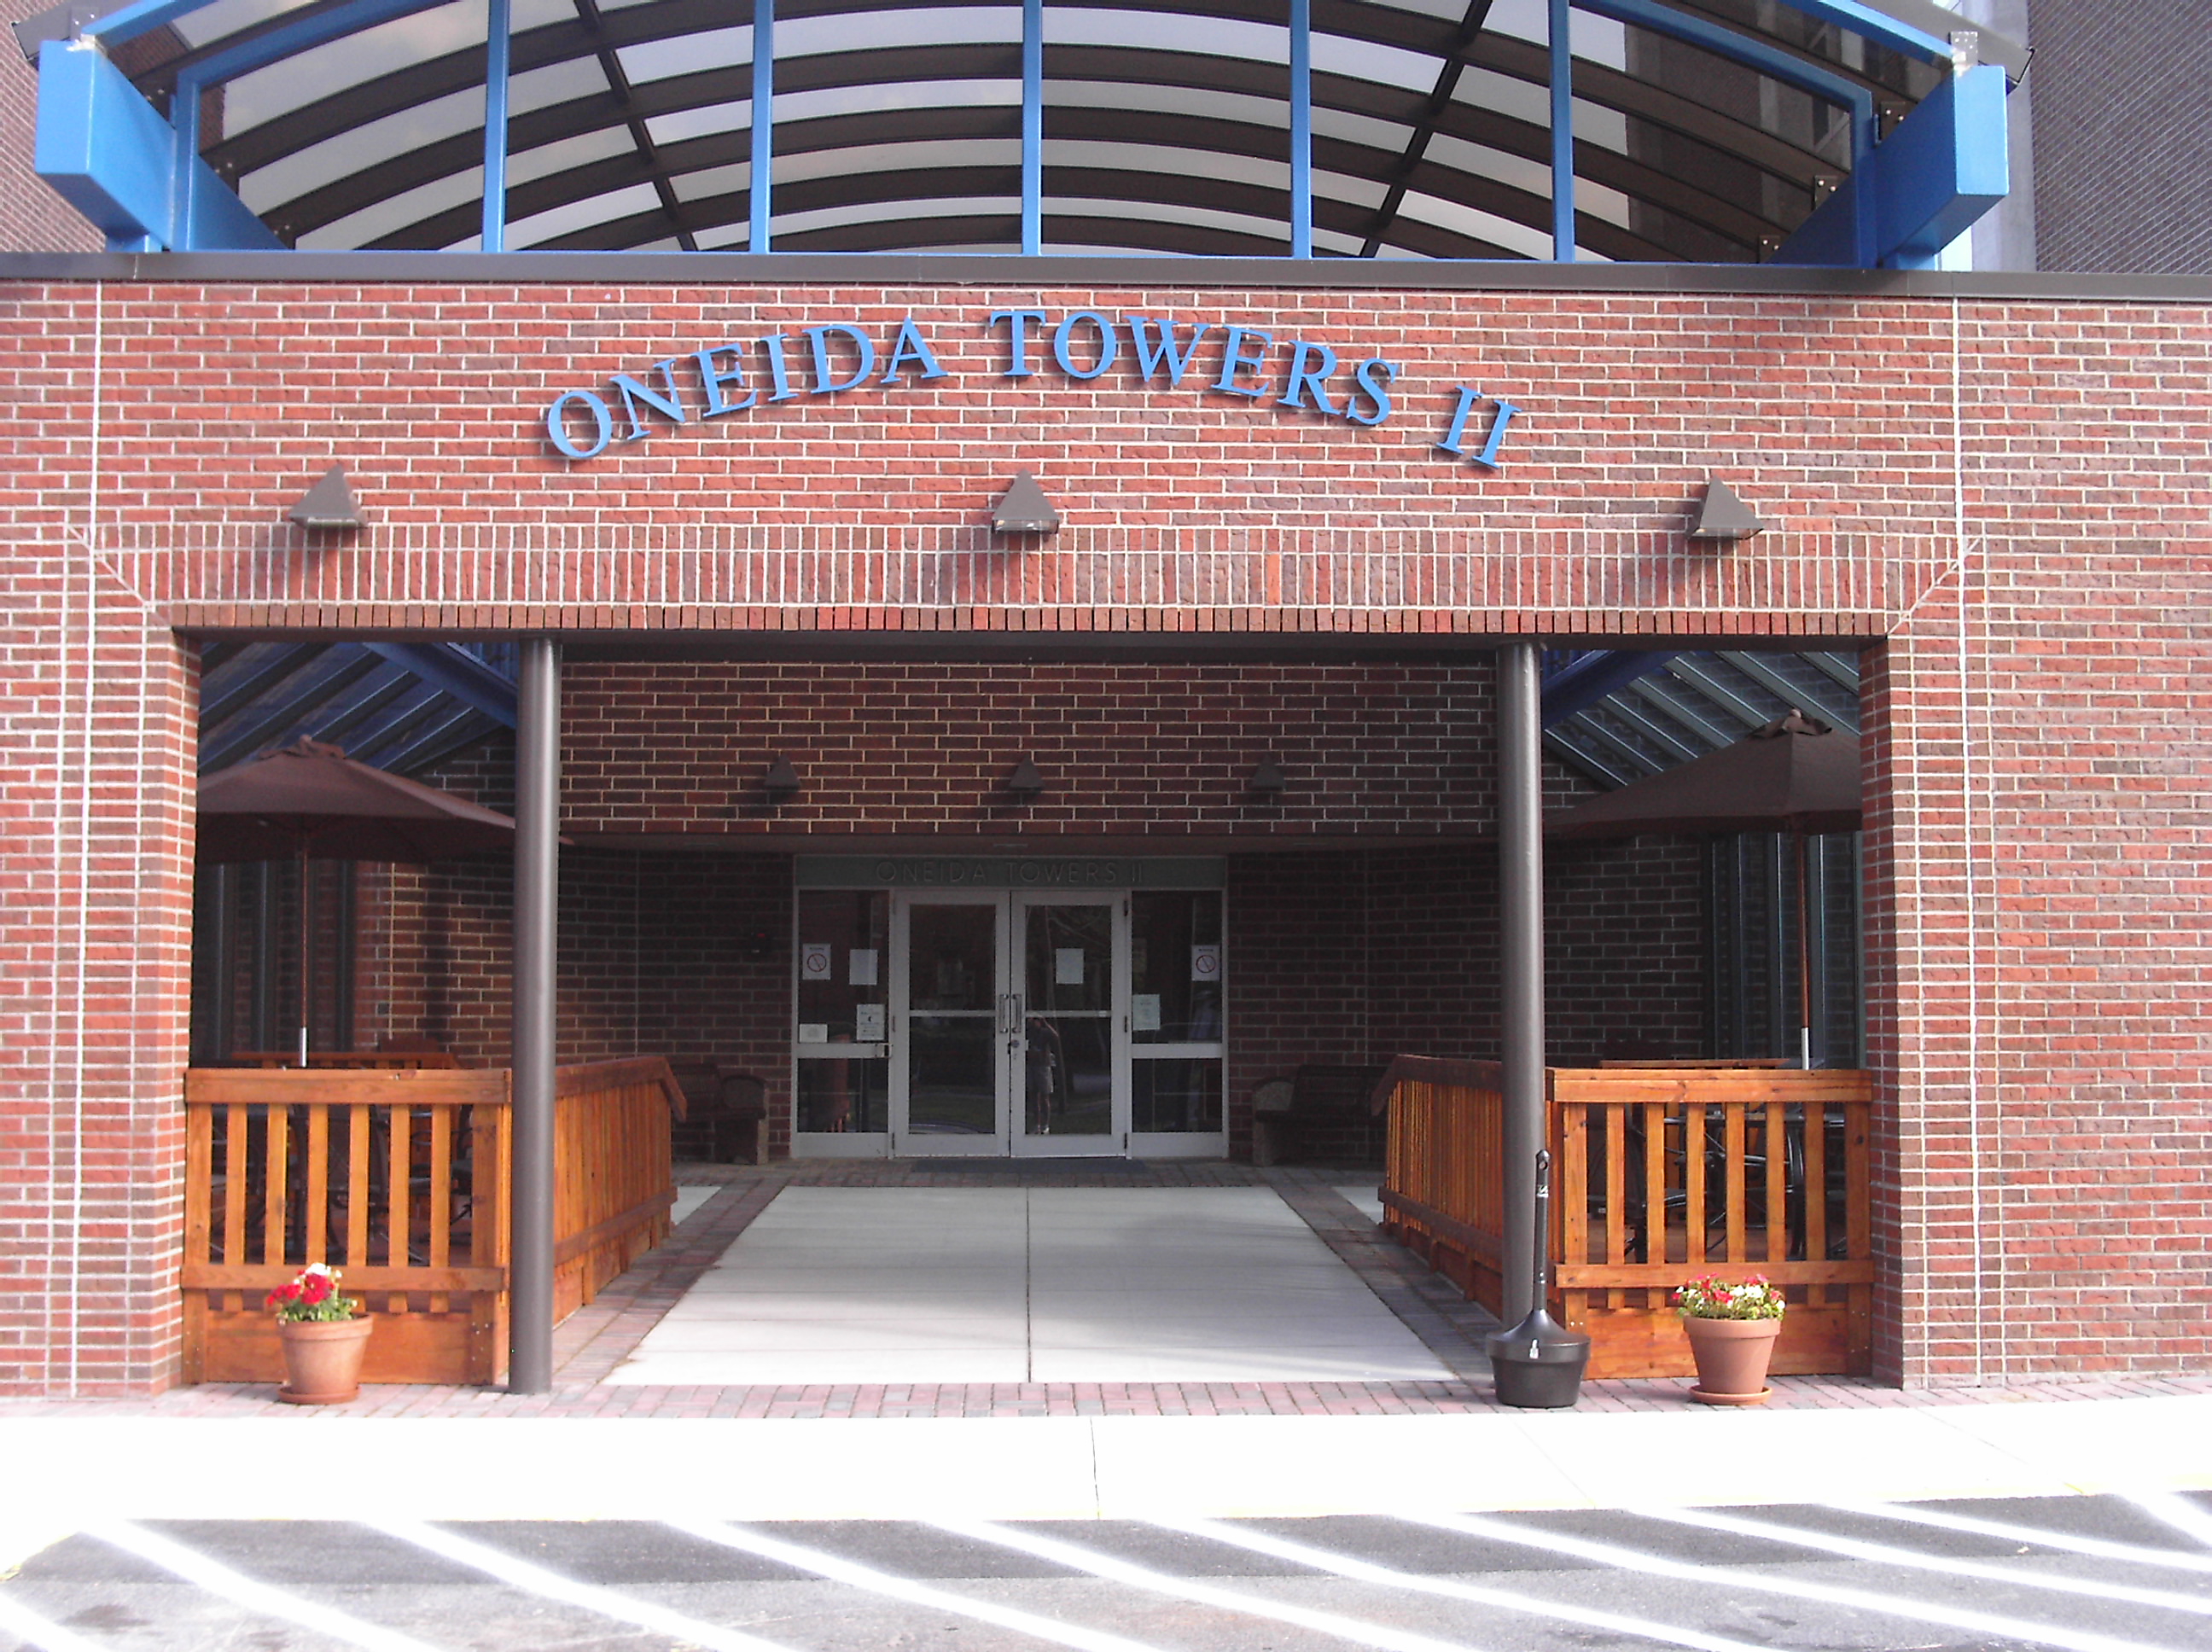 ONEIDA TOWERS II